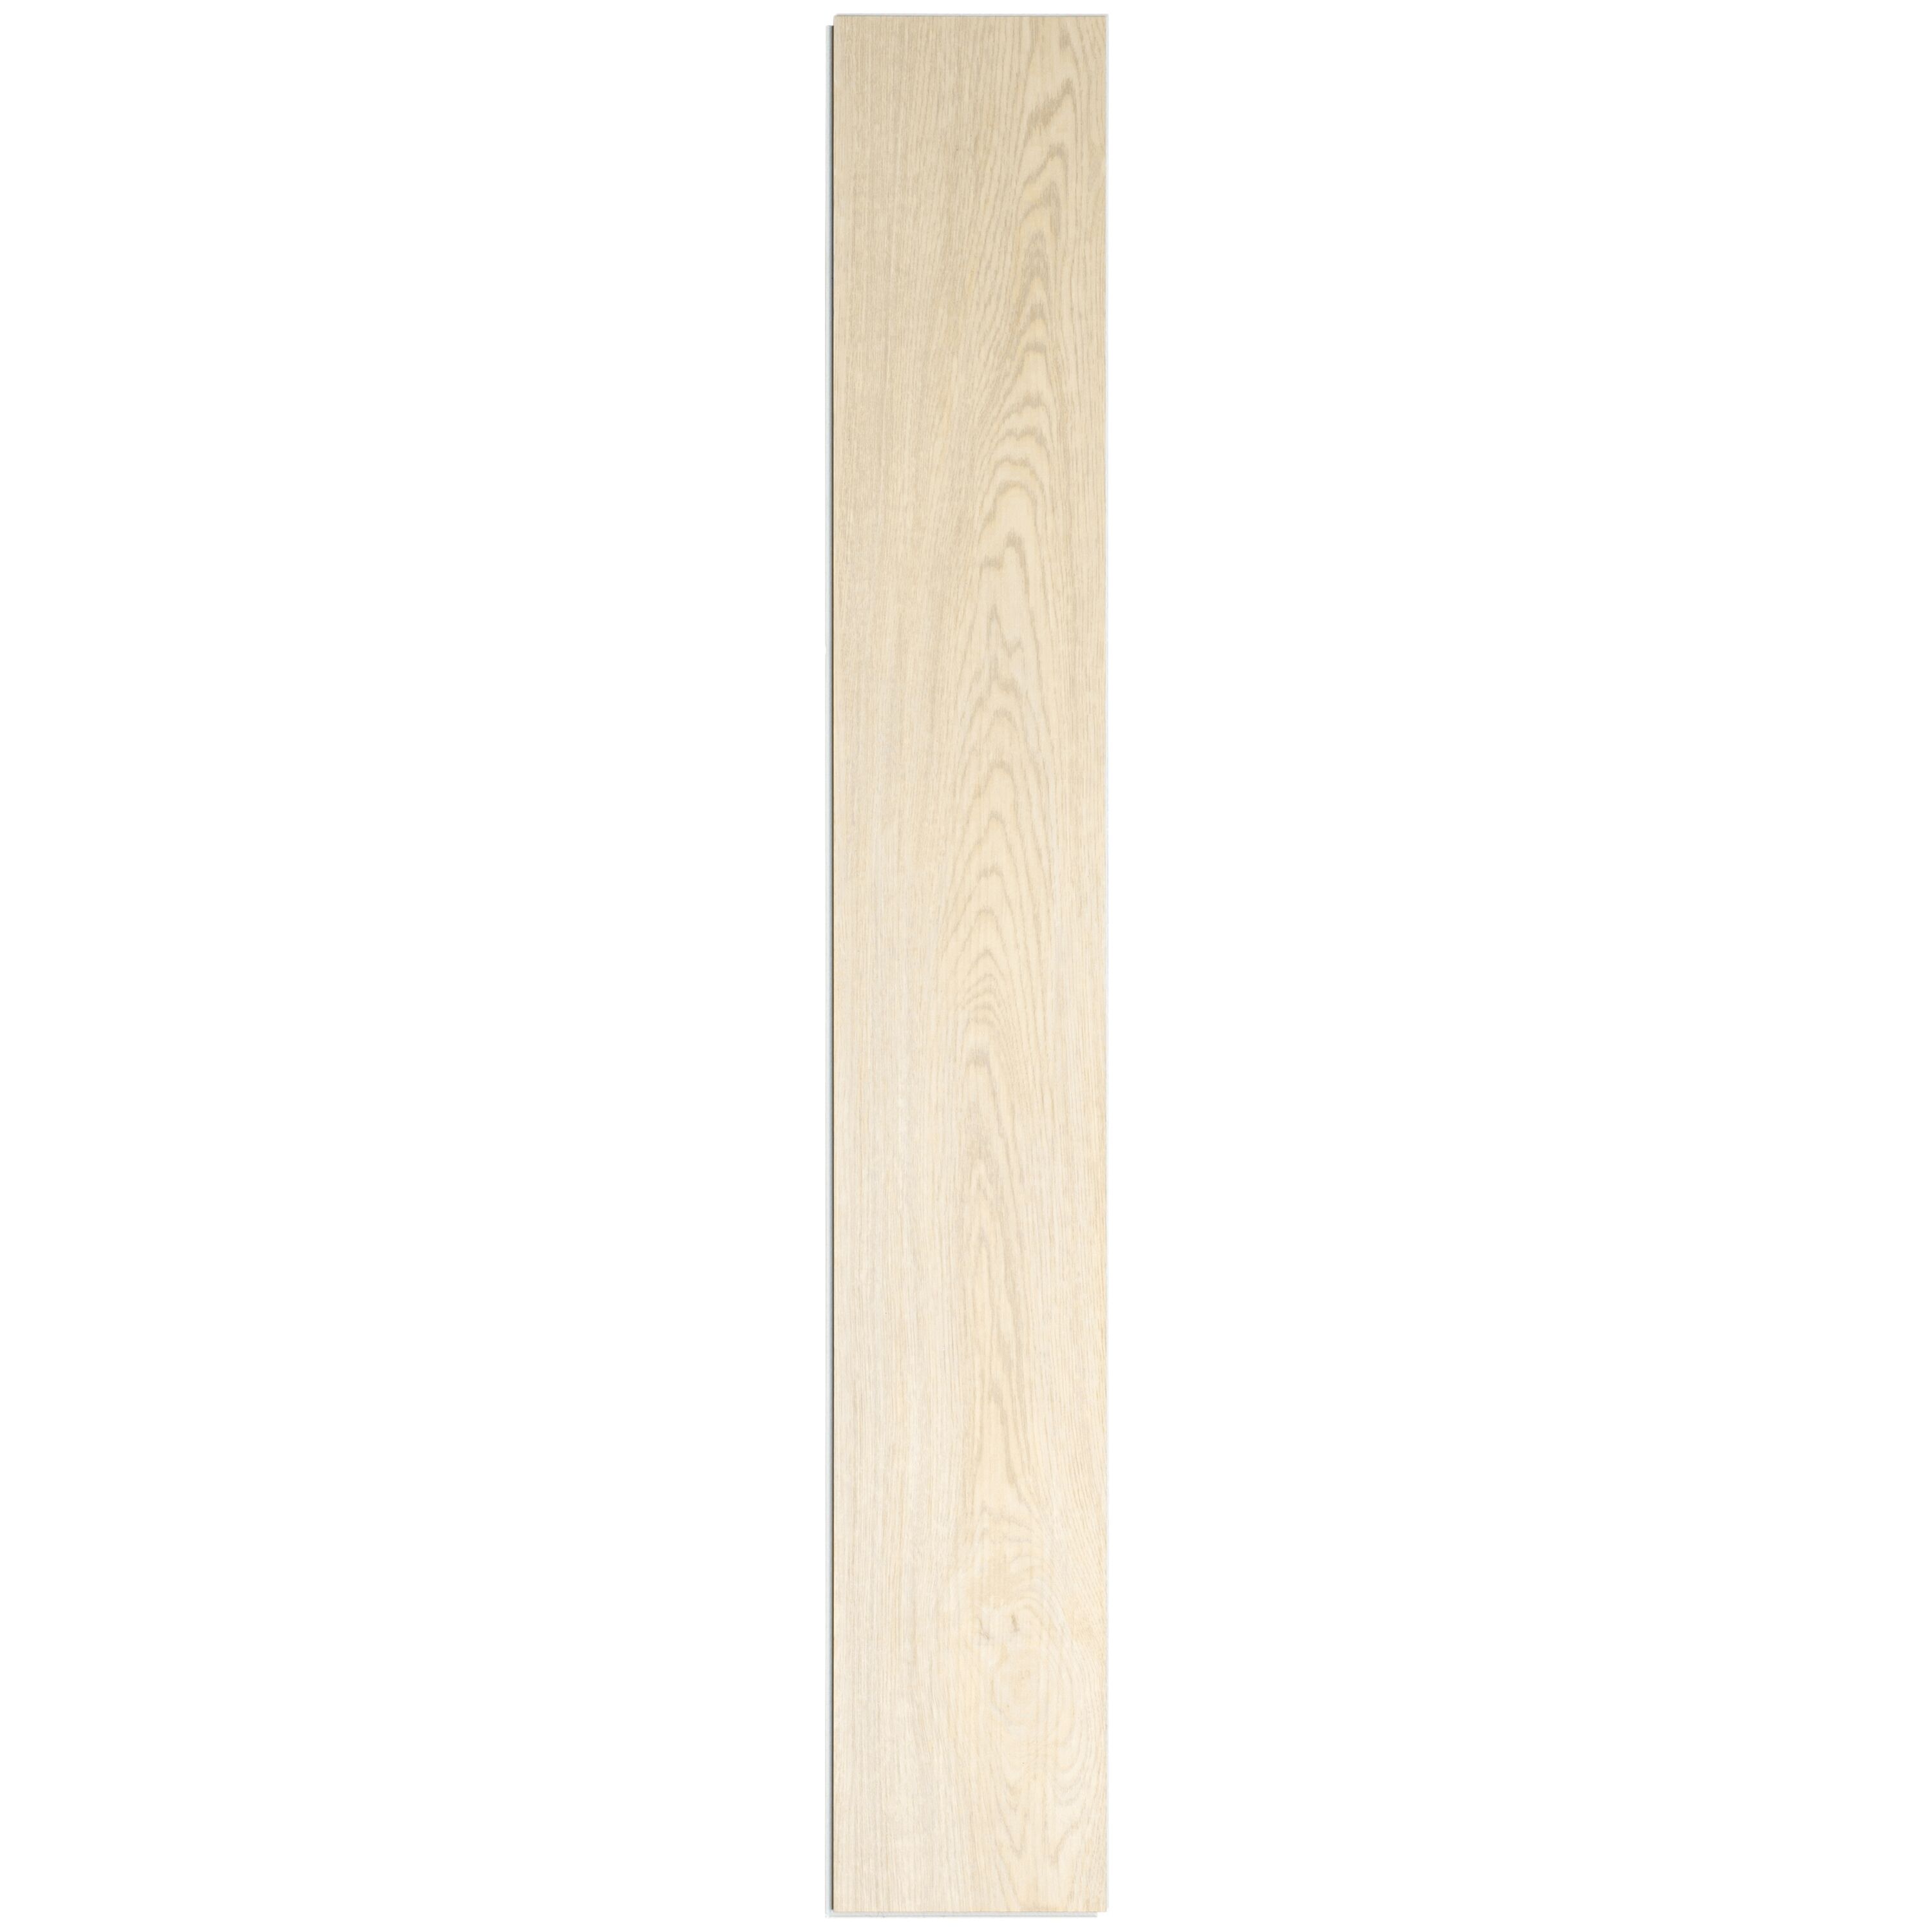 Mohawk (Sample) Basics Garnet Brown Flex Waterproof Wood Look Glue Down  Luxury Vinyl Plank in the Vinyl Flooring Samples department at